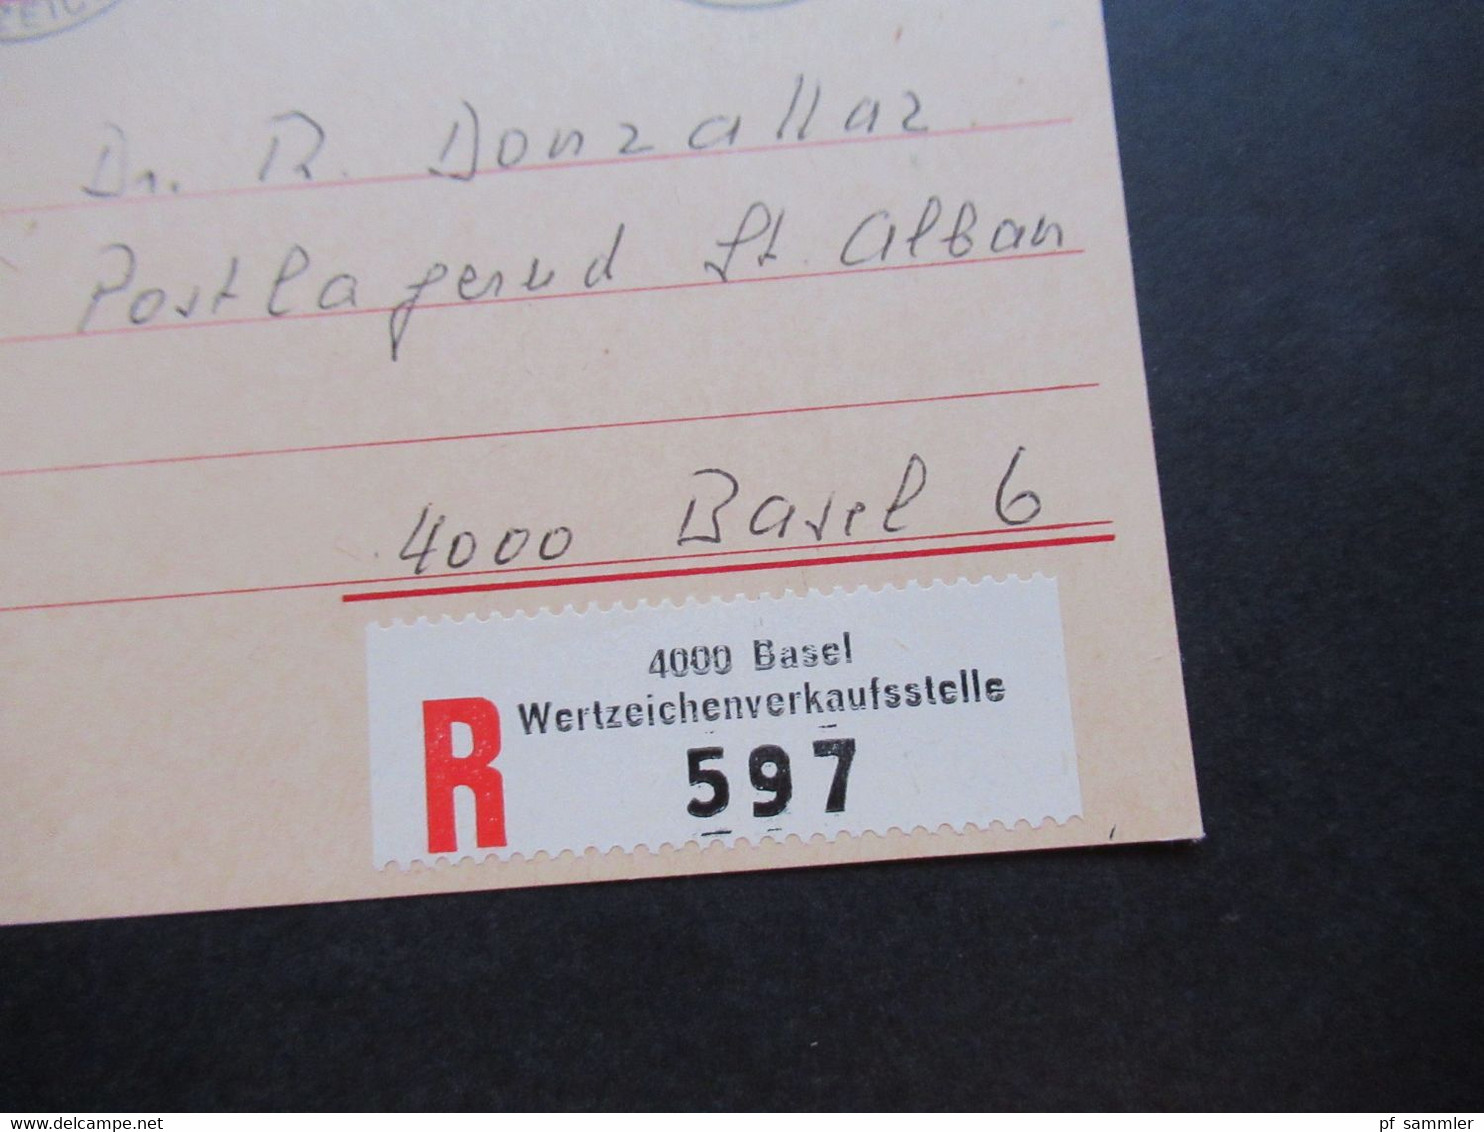 Schweiz FDC 5.1.1976 Zusammendruck KZ 31 aus MHB 54 jeweils als Zusatzfrankatur auf Ganzsache Einschreiben Bern